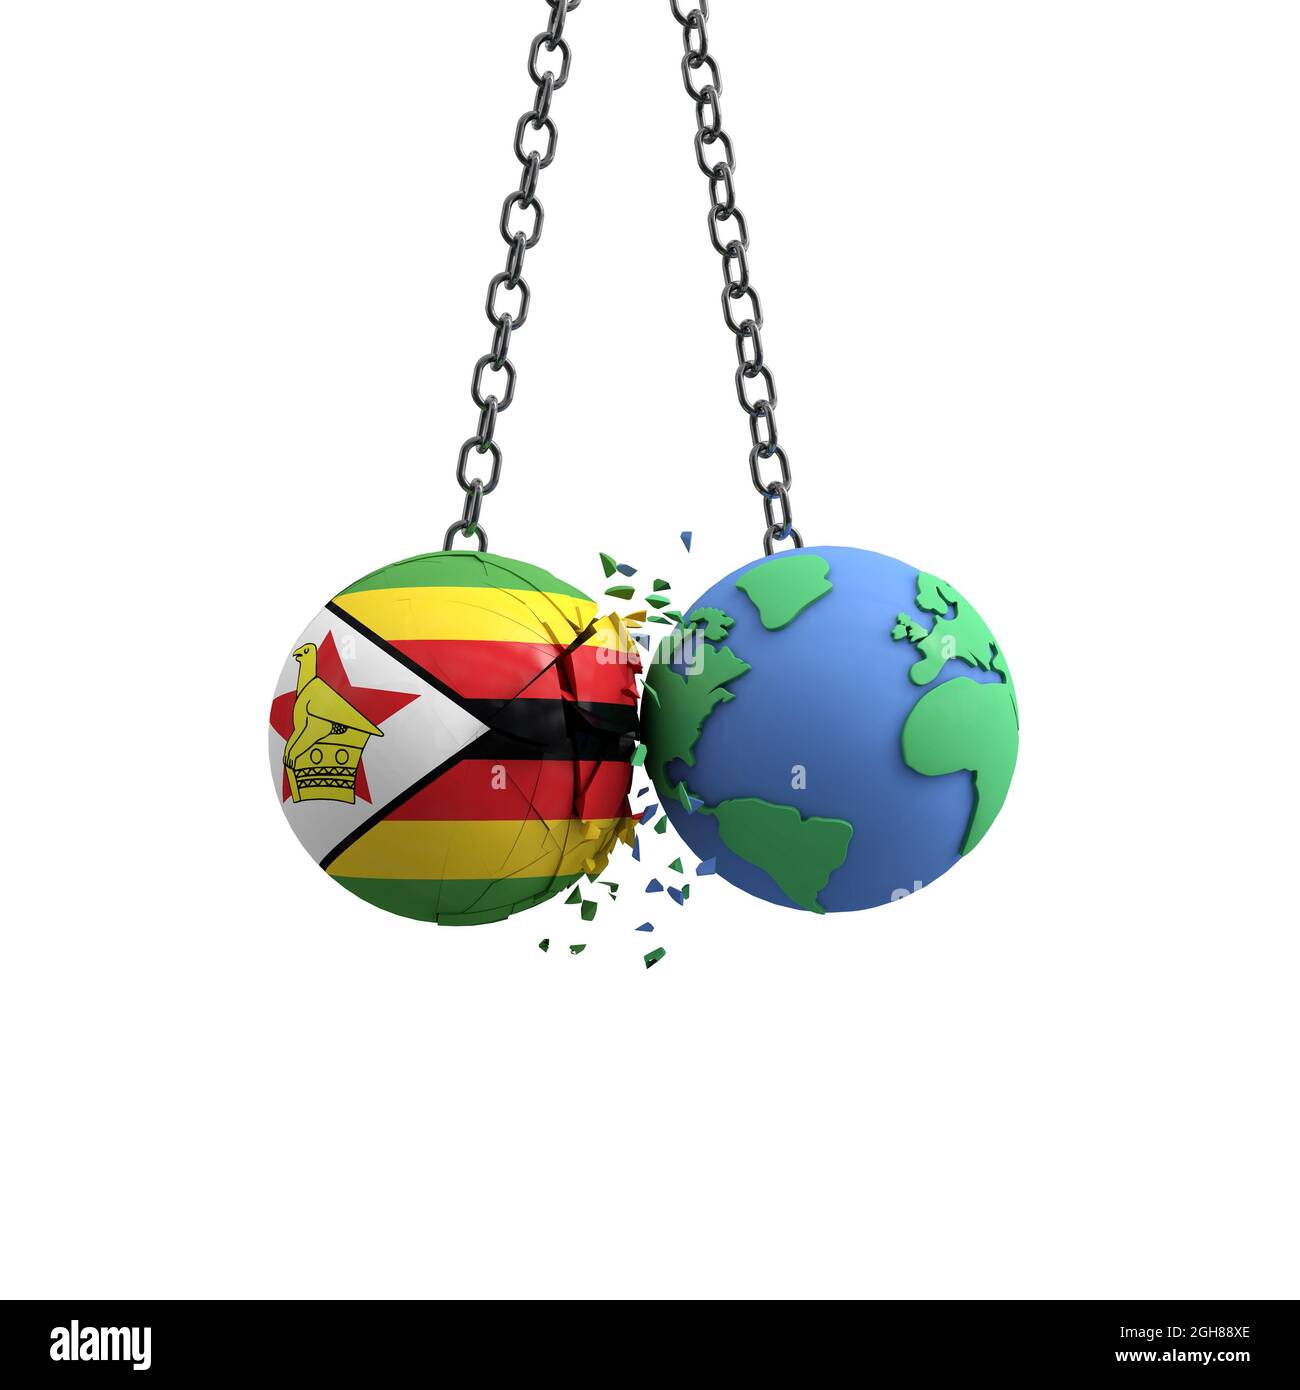 Le drapeau du Zimbabwe frappe la planète Terre. Concept d'impact sur l'environnement. Rendu 3D Banque D'Images